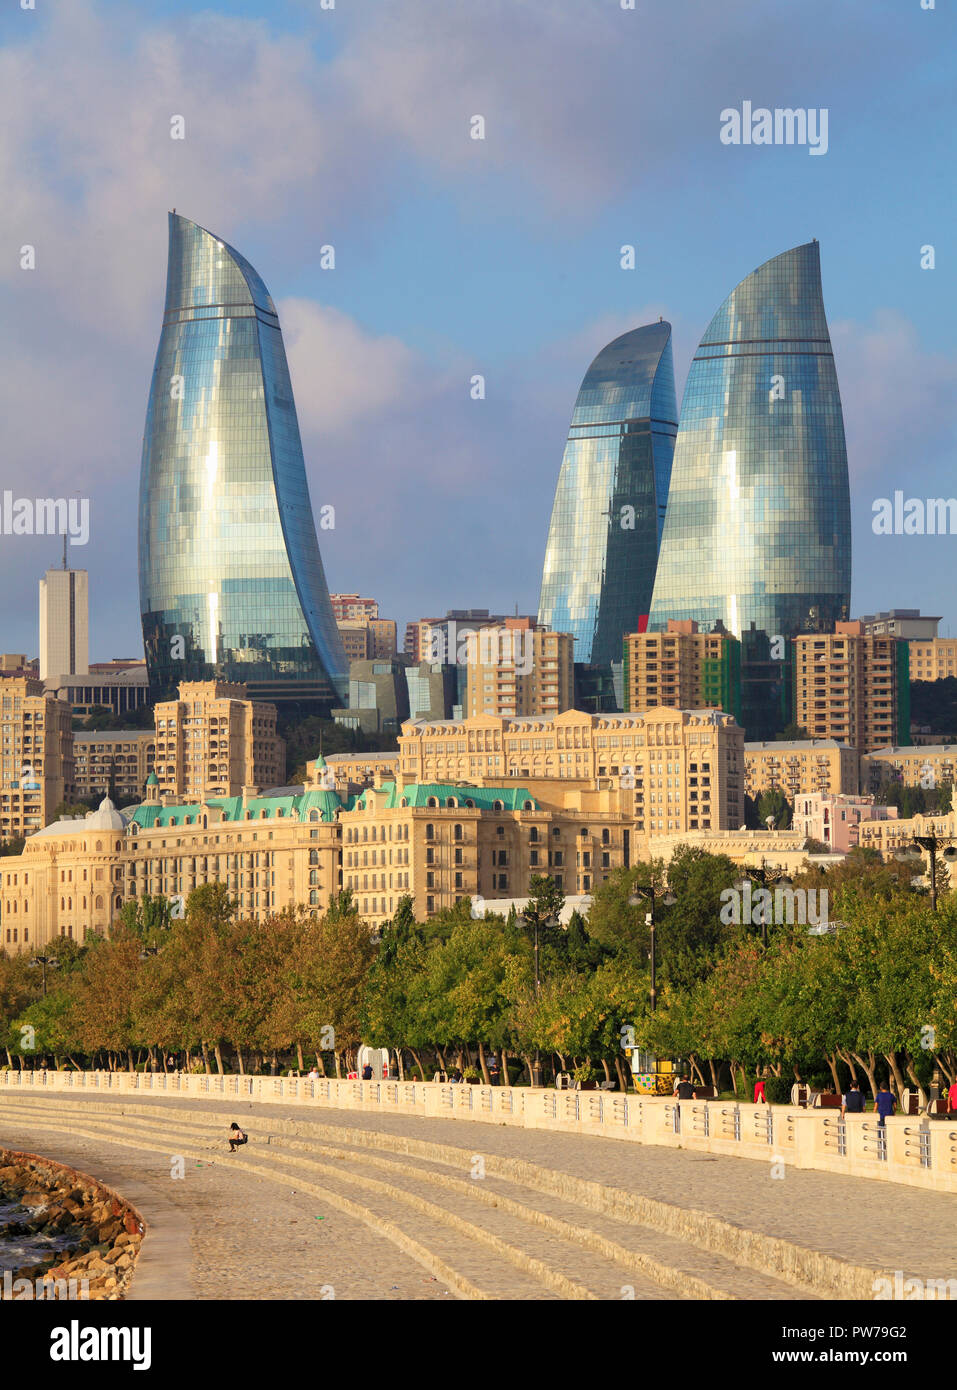 Azerbaijan baku skyline hi-res stock photography and images - Alamy